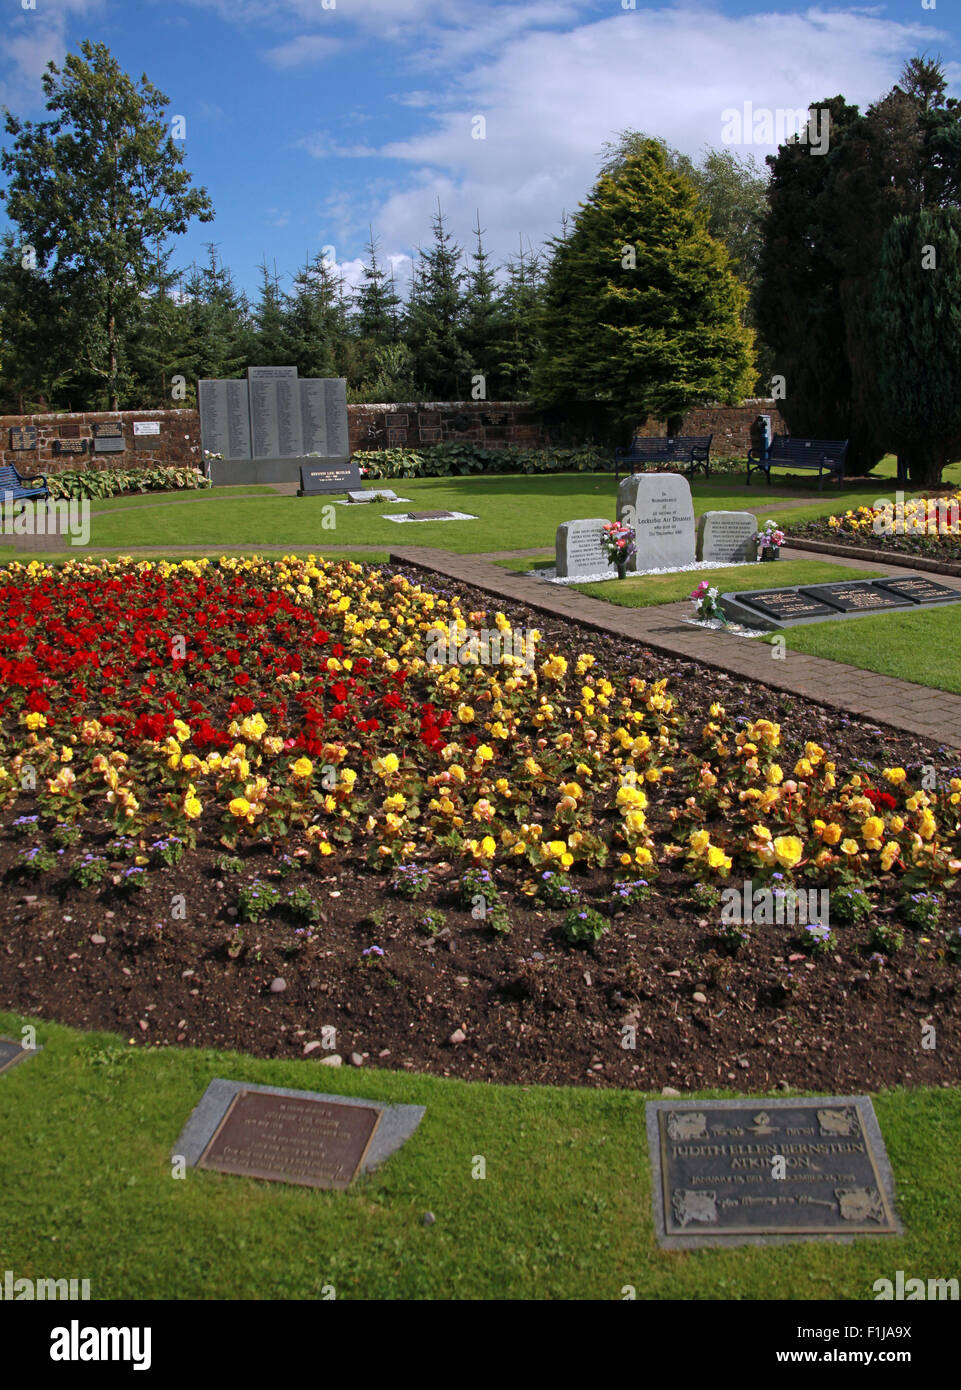 PanAm Lockerbie103 En souvenir Memorial Garden, Vue de côté, l'été en Ecosse Banque D'Images